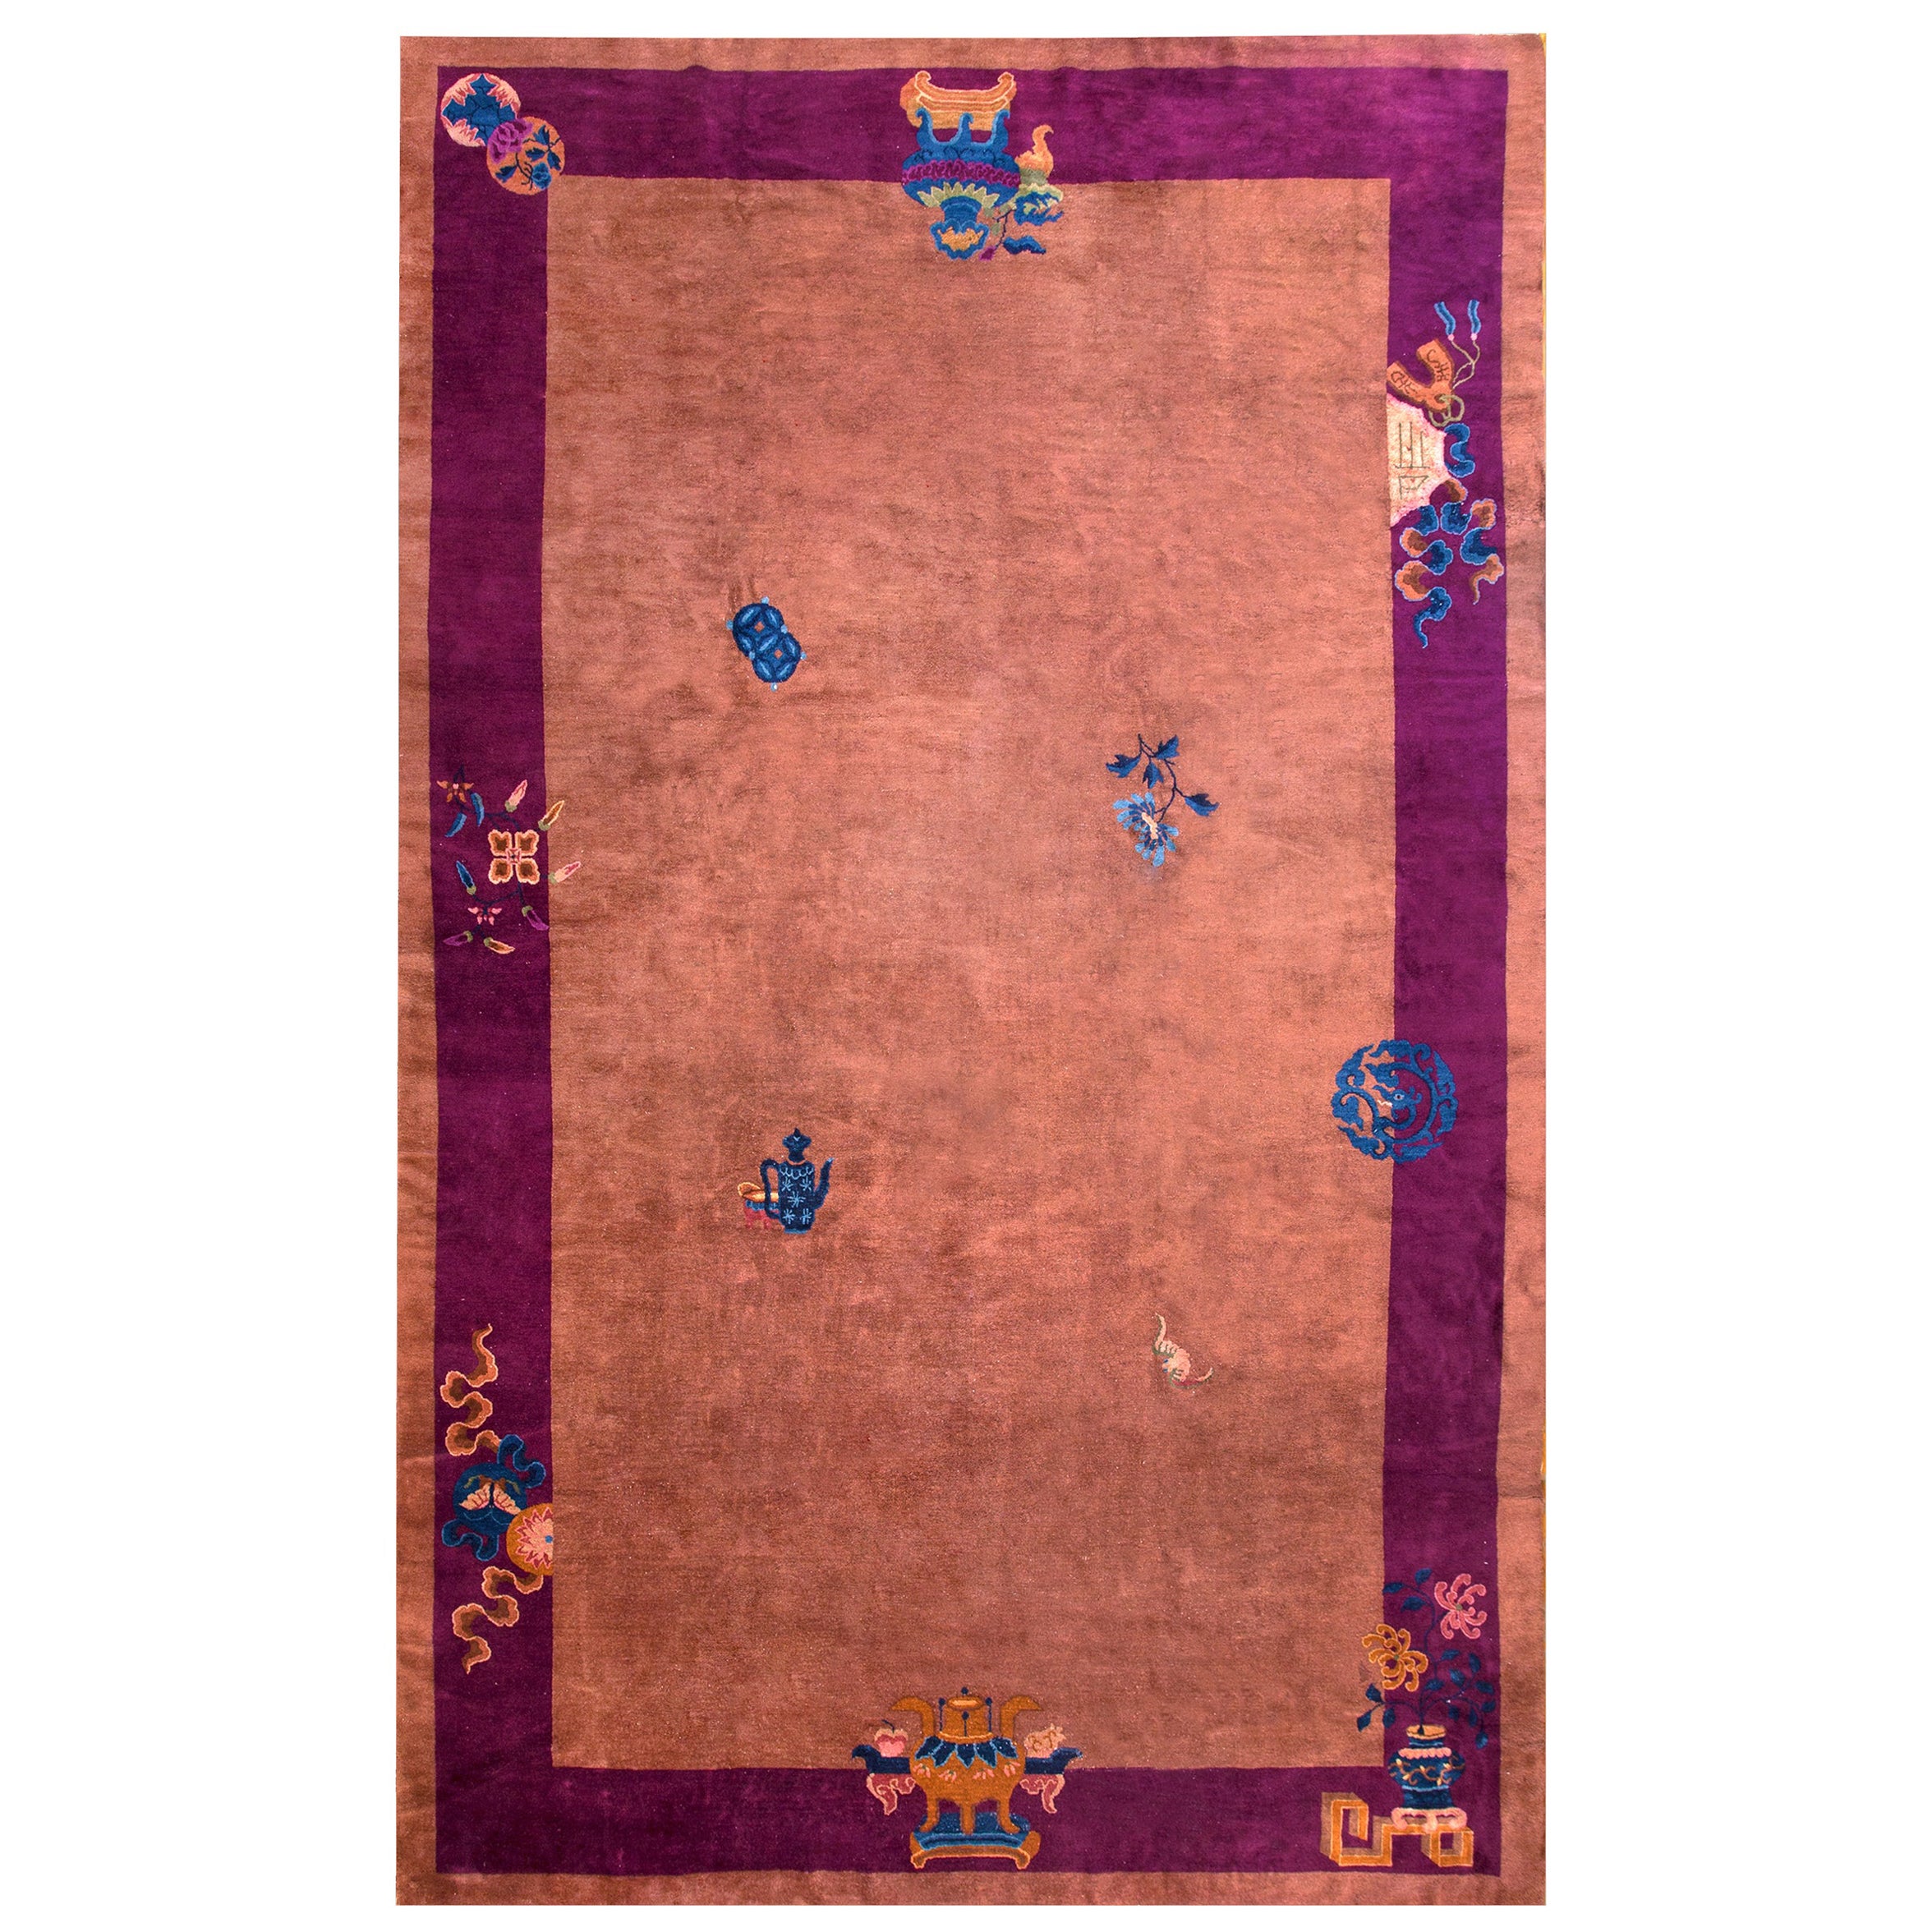 Chinesischer Art-Déco-Teppich des frühen 20. Jahrhunderts ( 9' x 14'3" - 275 x 435 )